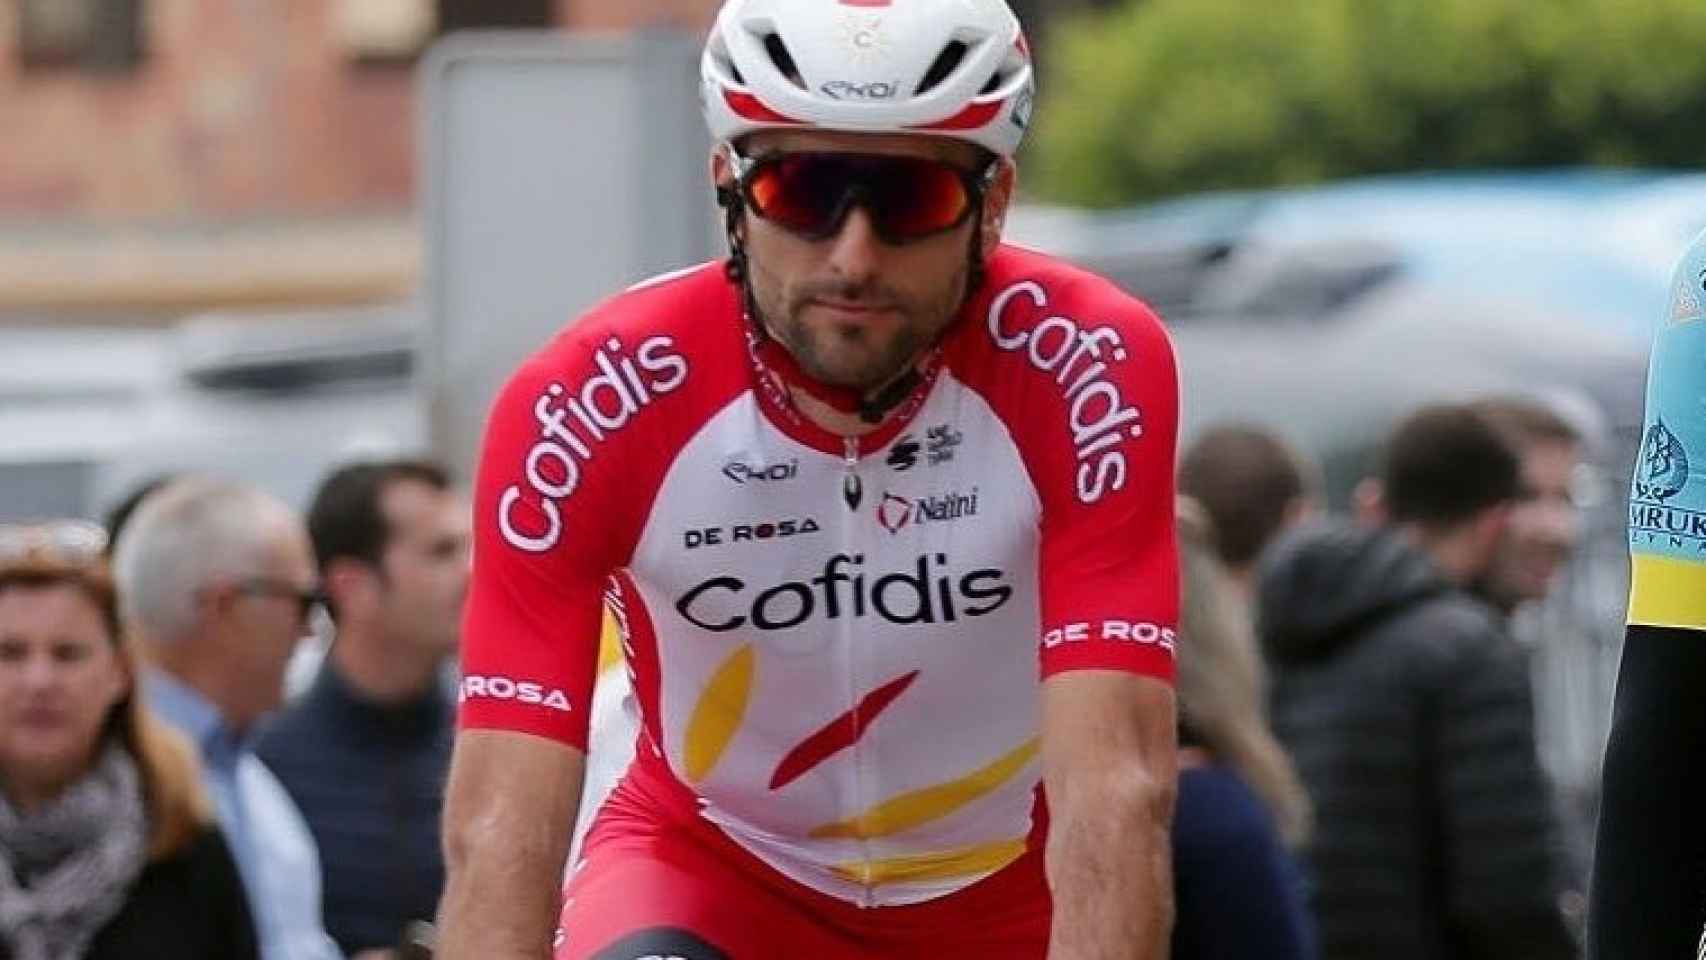 Luis Ángel Maté, durante la Vuelta al Algarve 2020